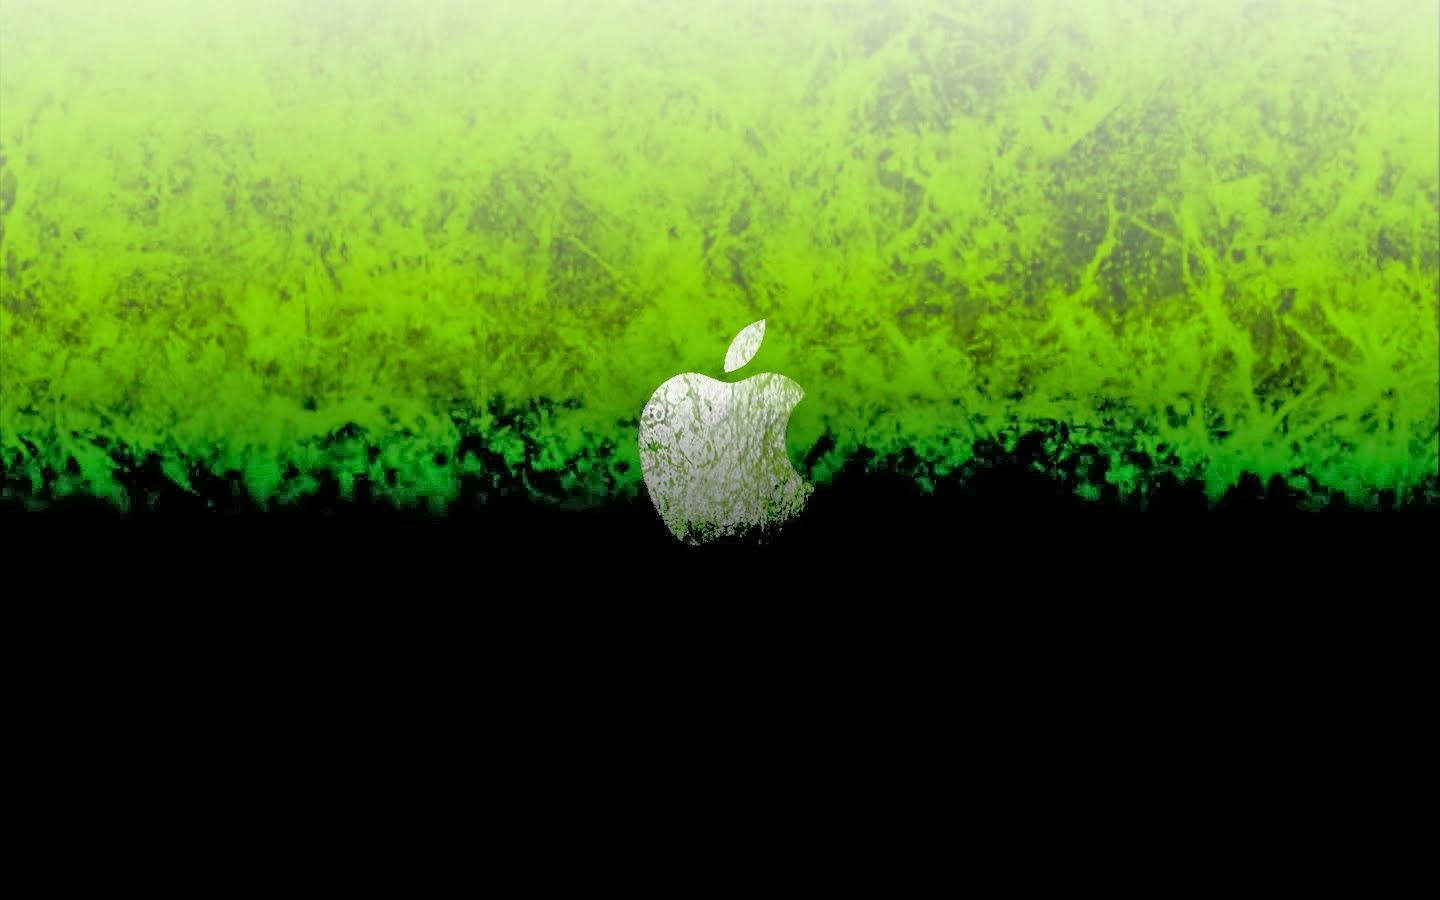 [50+] Green Apple Wallpaper | WallpaperSafari.com